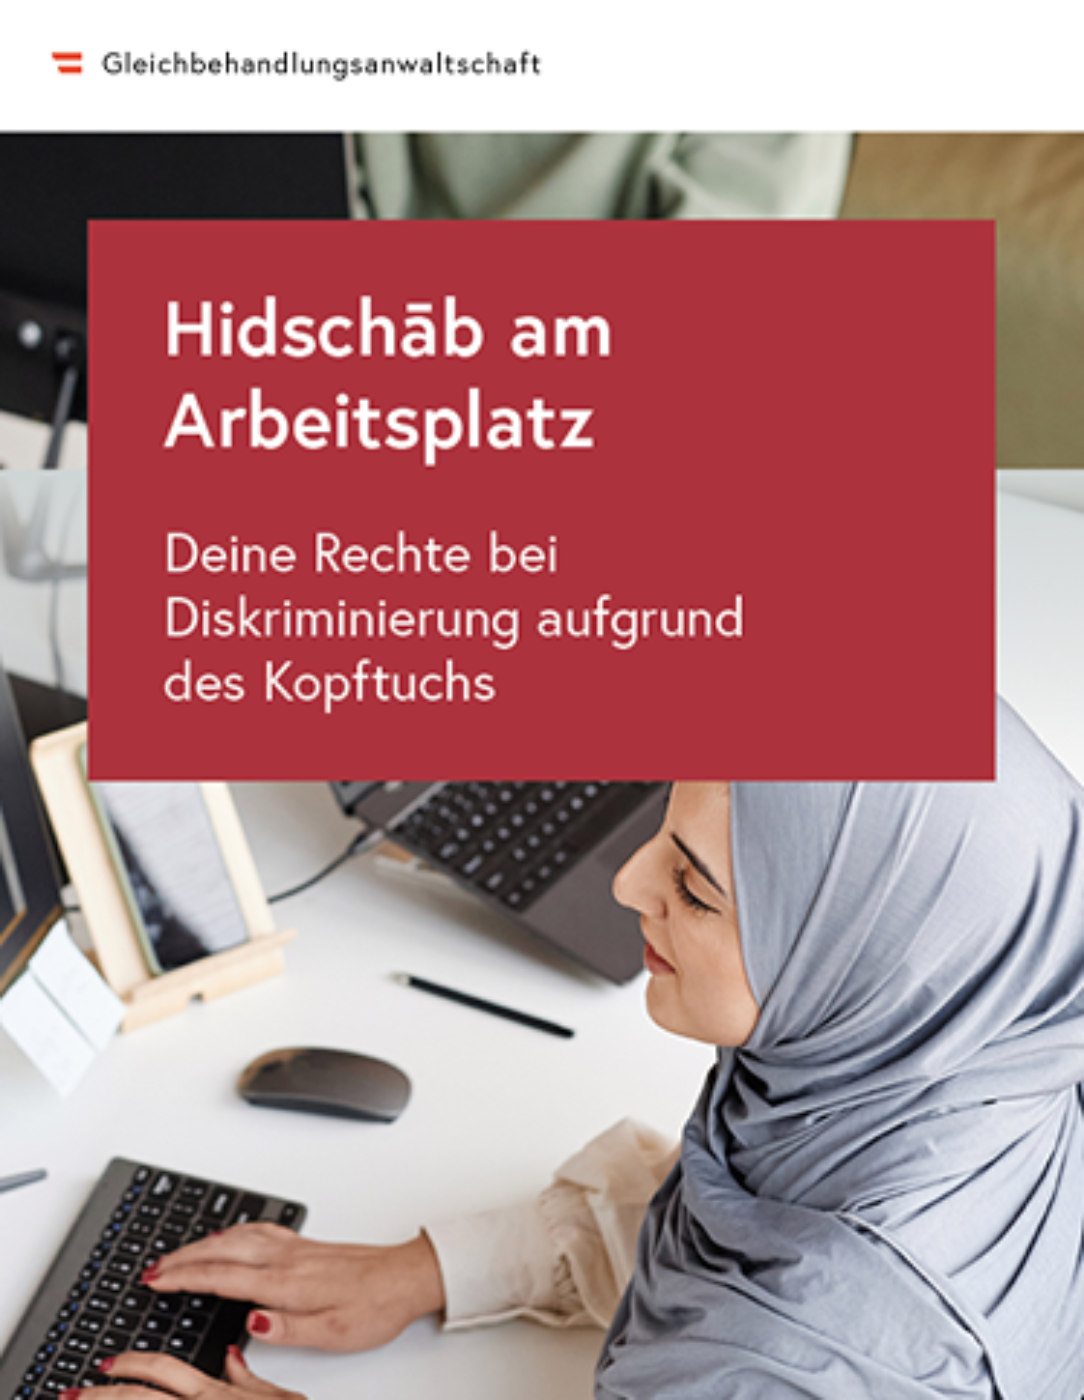 Titelbild des Folders "Hidschab am Arbeitsplatz"